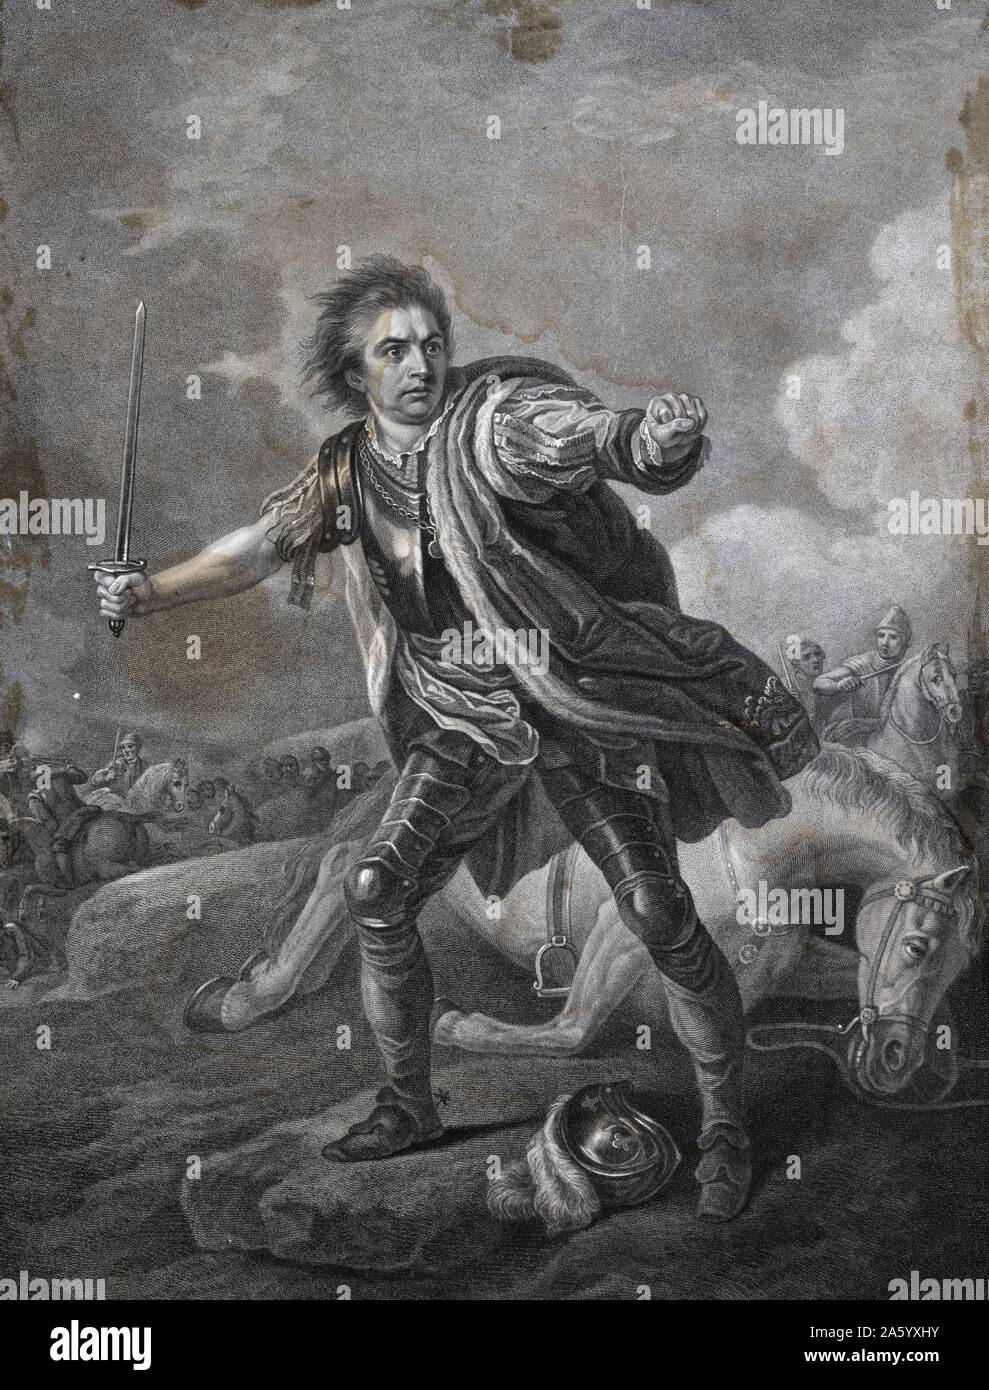 Darstellung der Schauspieler David Garrick (1717-1779), englischer Schauspieler, Dramatiker, Theaterdirektor und Produzent in der Rolle des Richard des dritten während der Schlacht von Bosworth Field. Vom Jahre 1811 Stockfoto